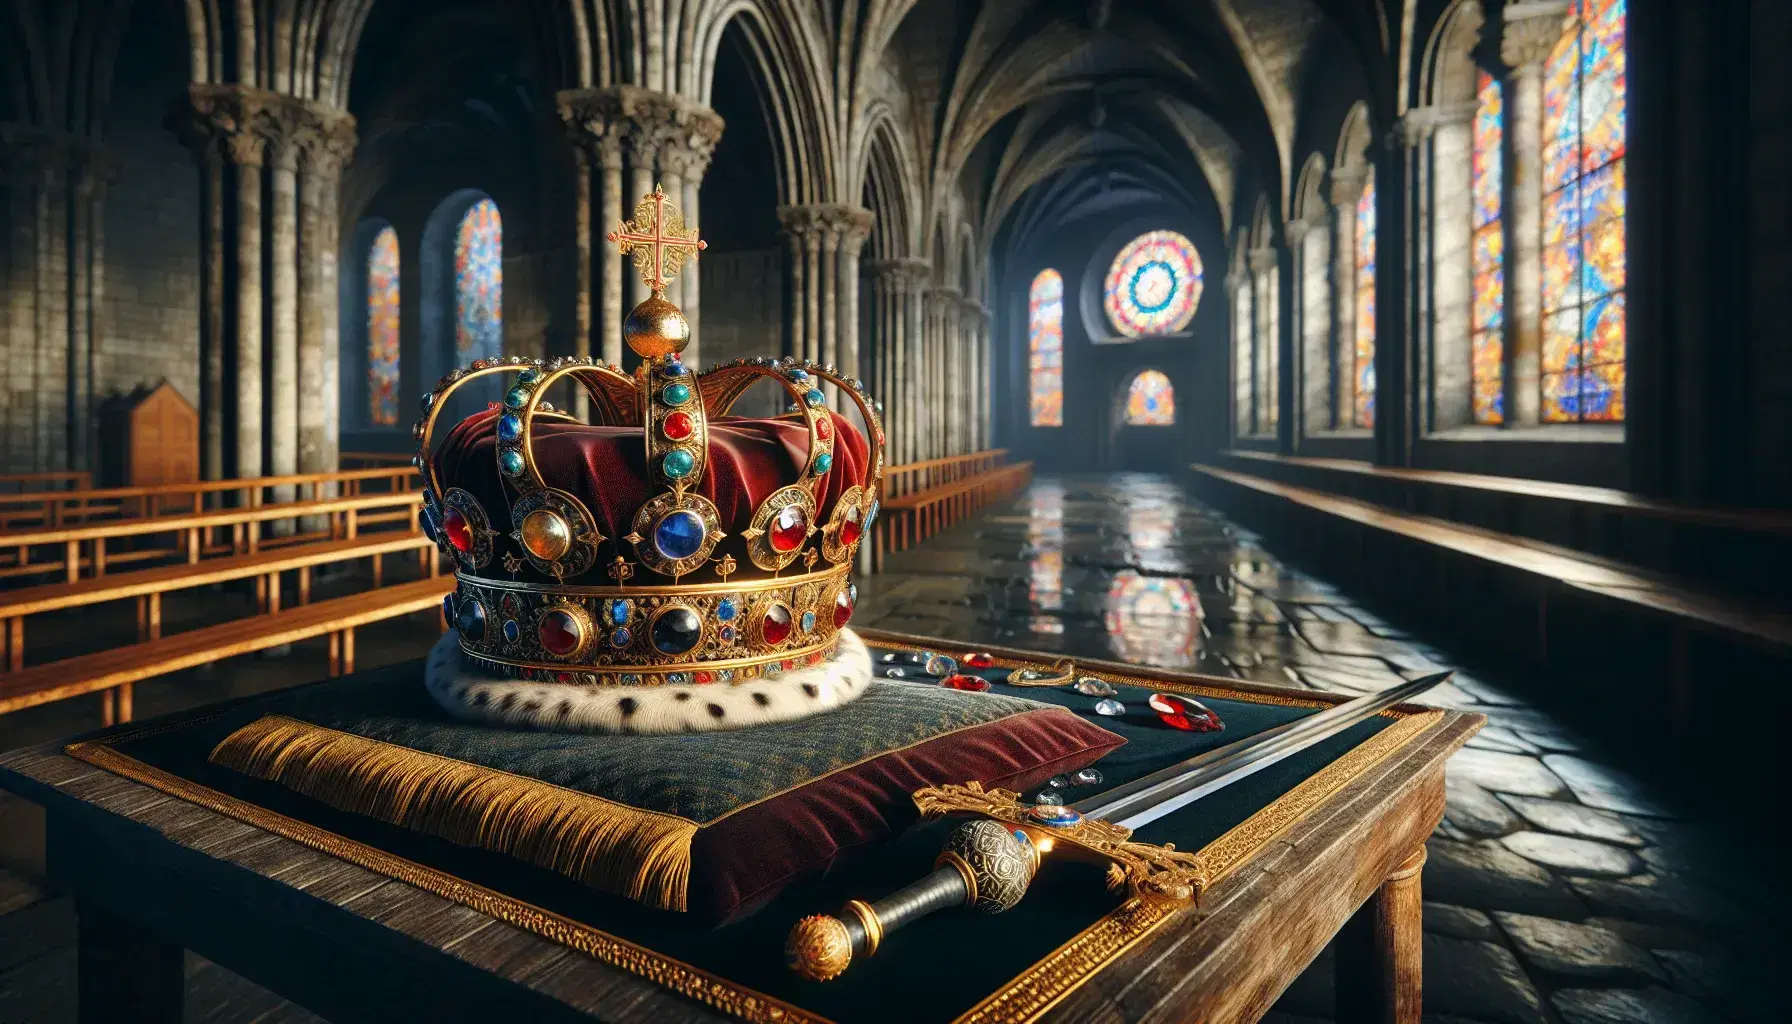 Corona imperiale dorata con gemme su cuscino di velluto, spada decorata, globus cruciger e pergamena su tavolo antico, cattedrale romanica sullo sfondo.